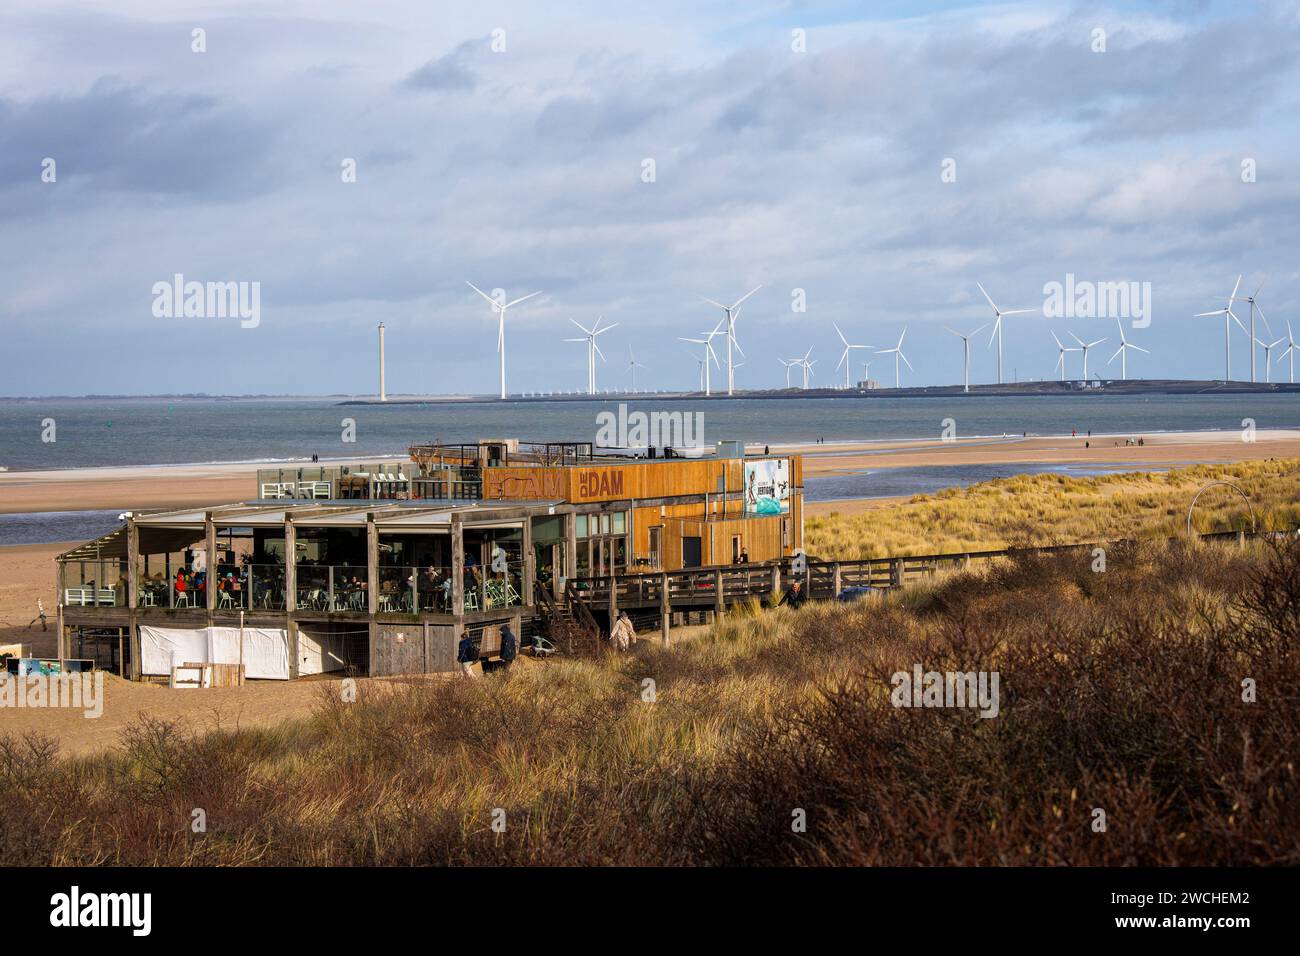 Il padiglione sulla spiaggia De Dam sulla spiaggia di Vrouwenpolder su Walcheren, sullo sfondo delle turbine eoliche presso la barriera della Schelda orientale, Zelanda, Netherl Foto Stock